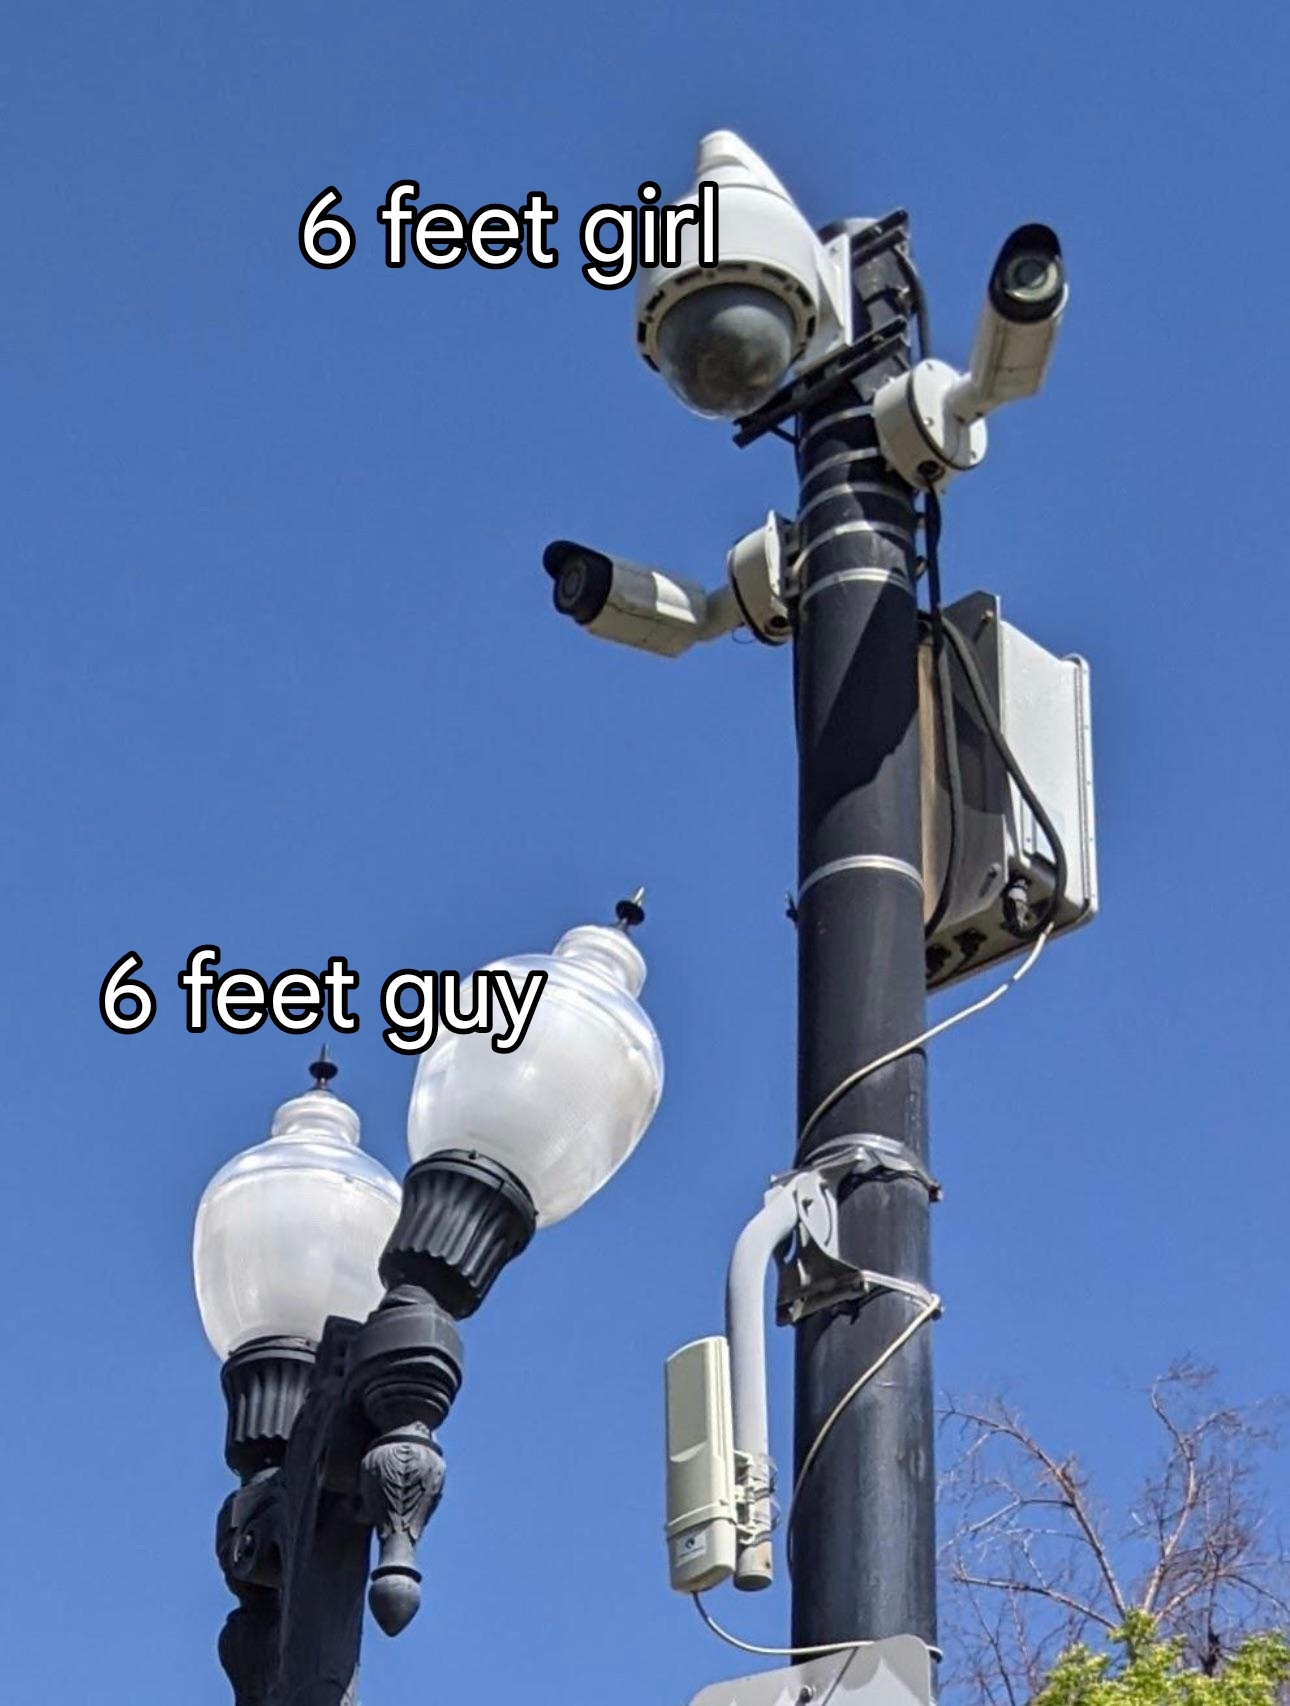 fresh memes - sky - 6 feet girl 6 feet guy